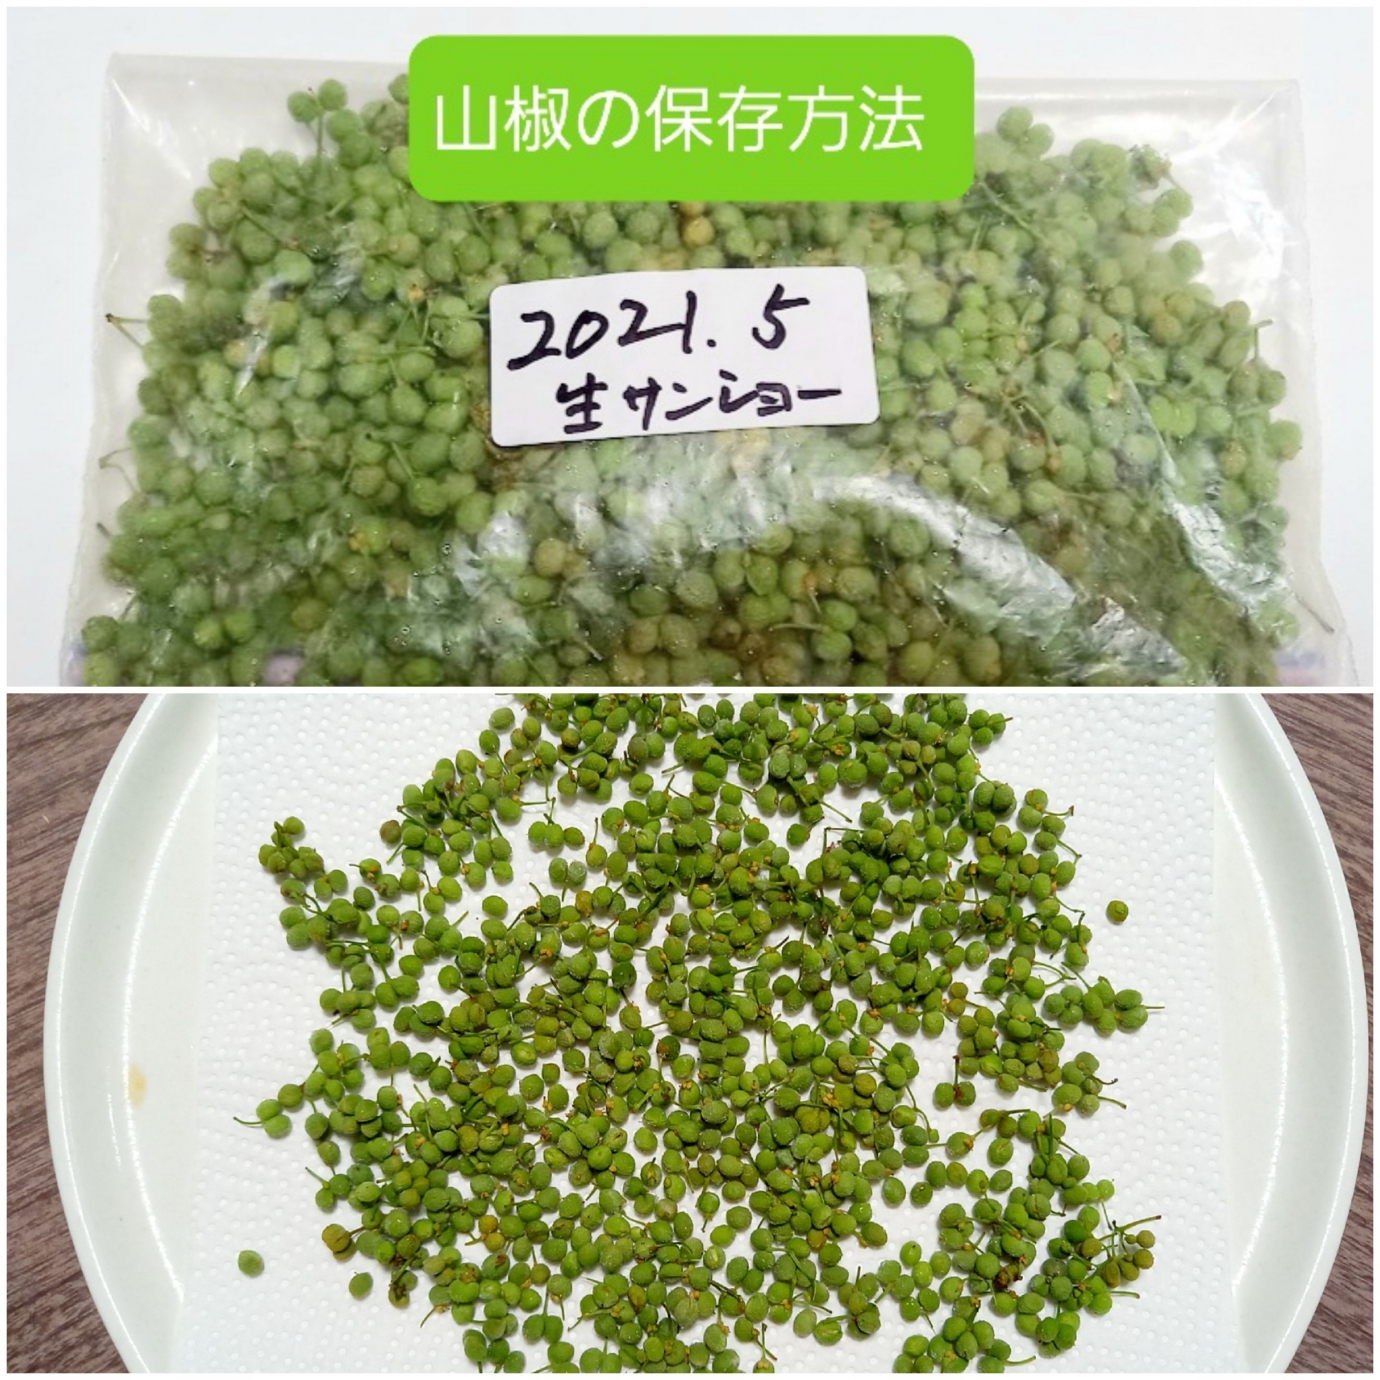 生山椒の実の保存方法 Eatpick